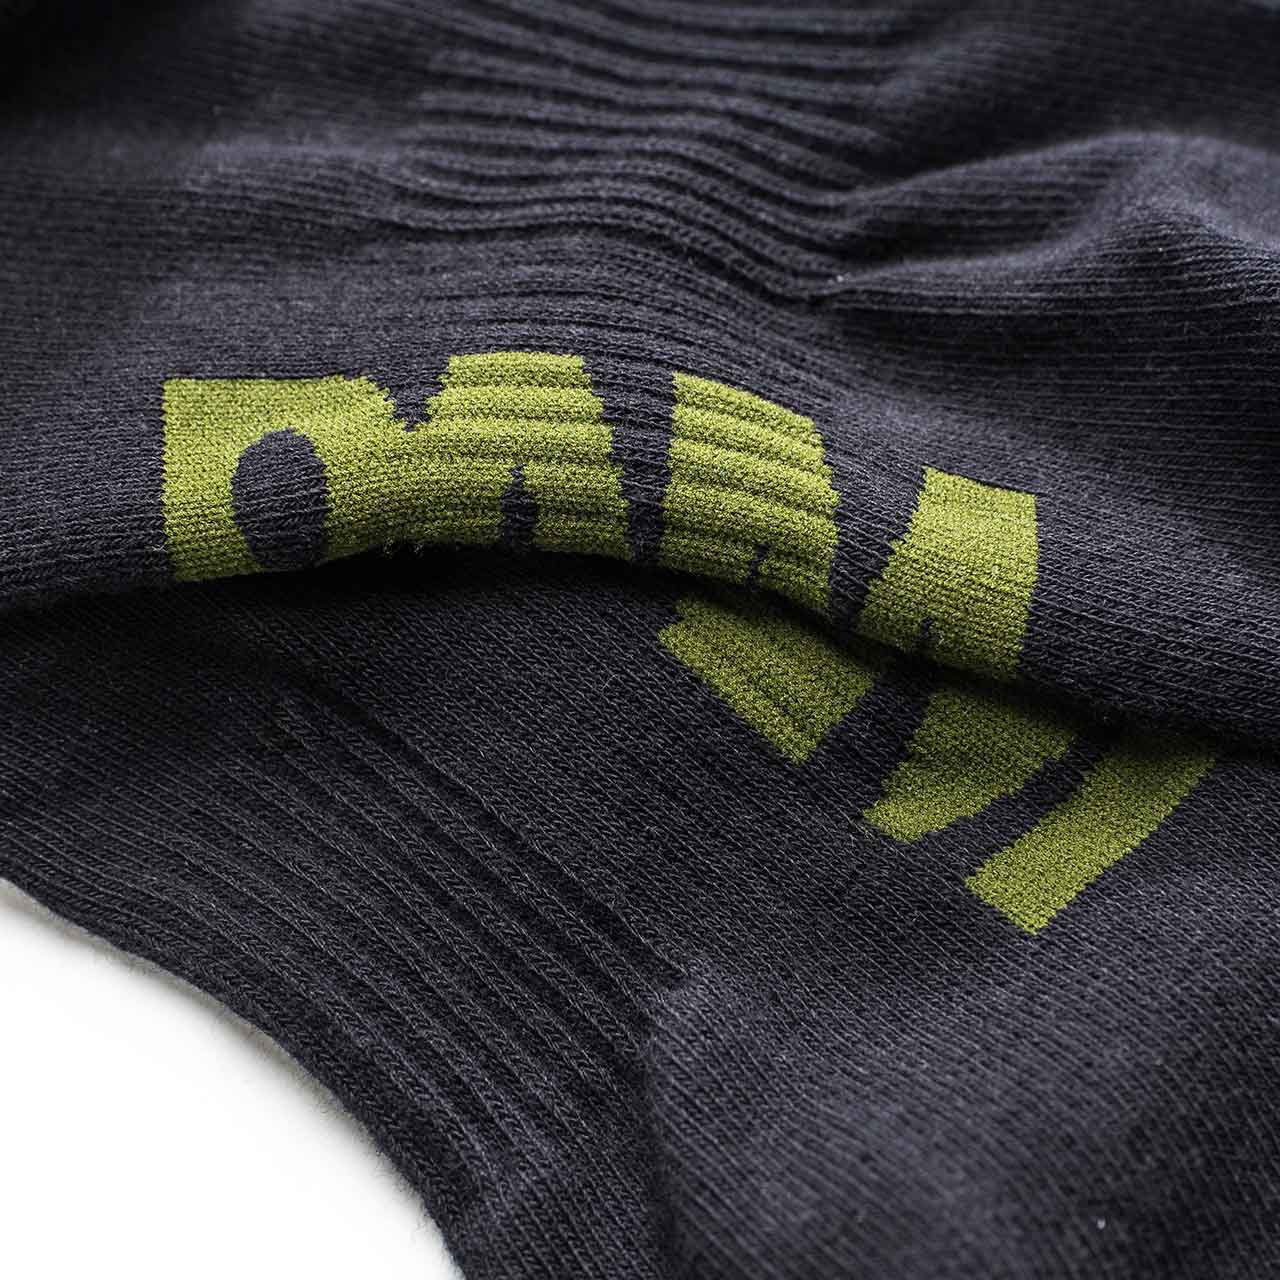 perks and mini dip sport socks (black / khaki) - 9797-a-blkh - a.plus - Image - 3